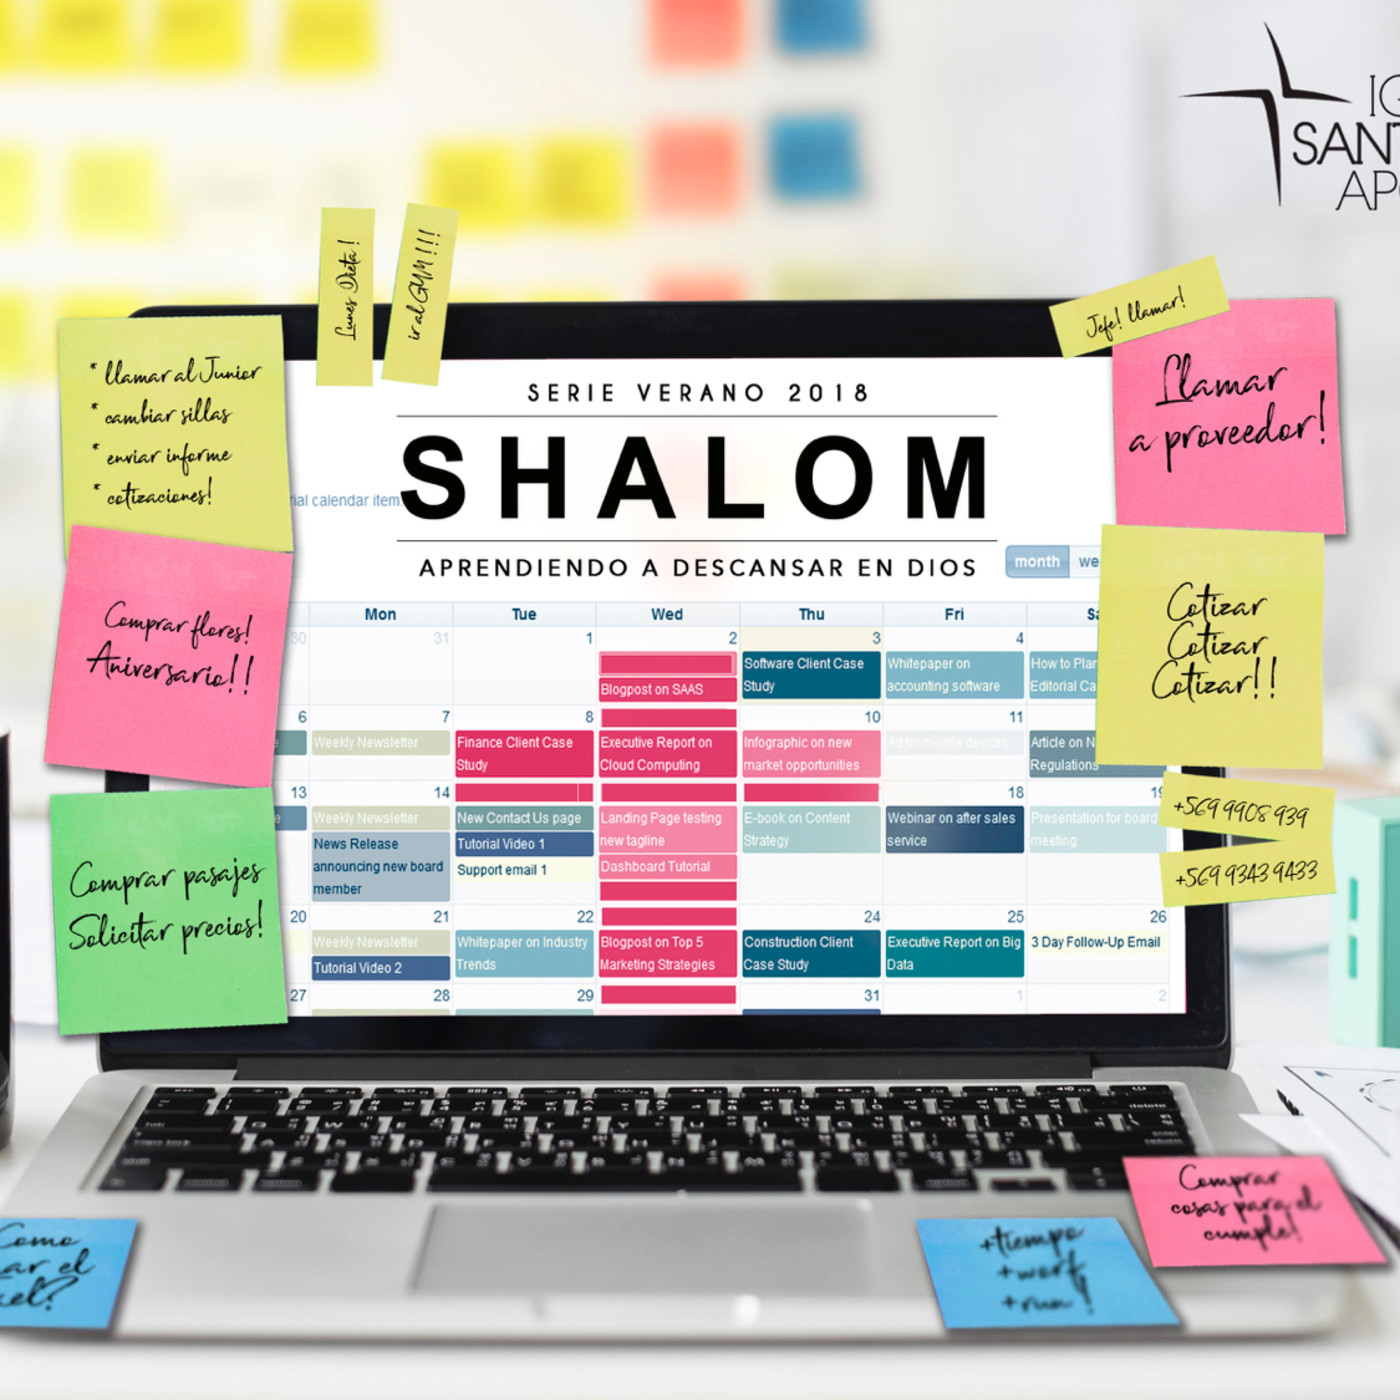 SHALOM: Aprendiendo a descansar en Dios